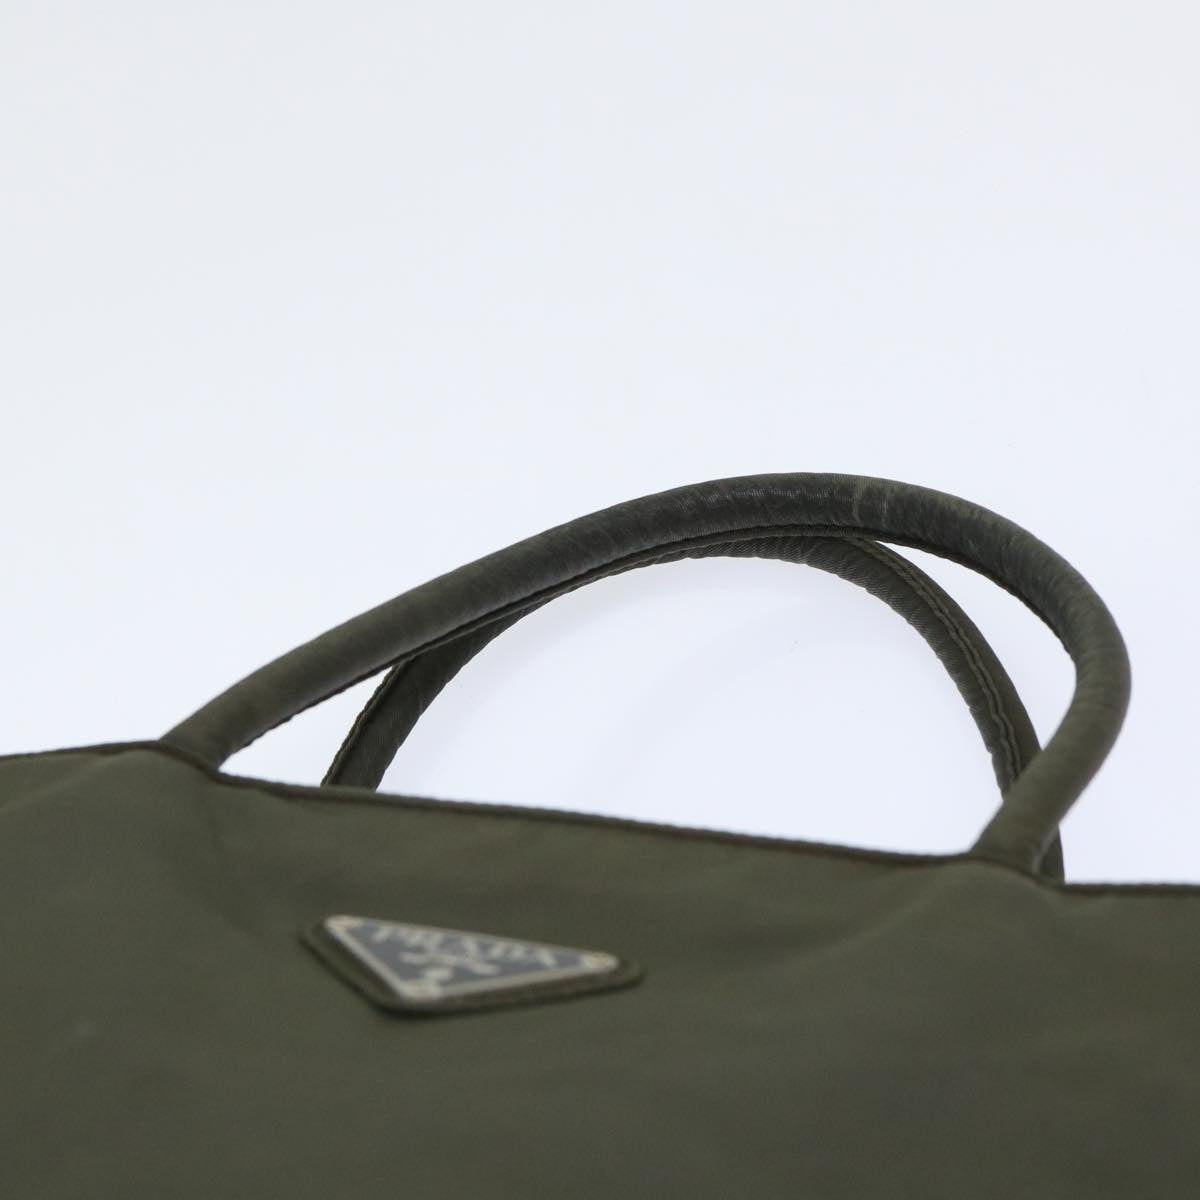 PRADA Hand Bag Nylon Khaki Auth 50558